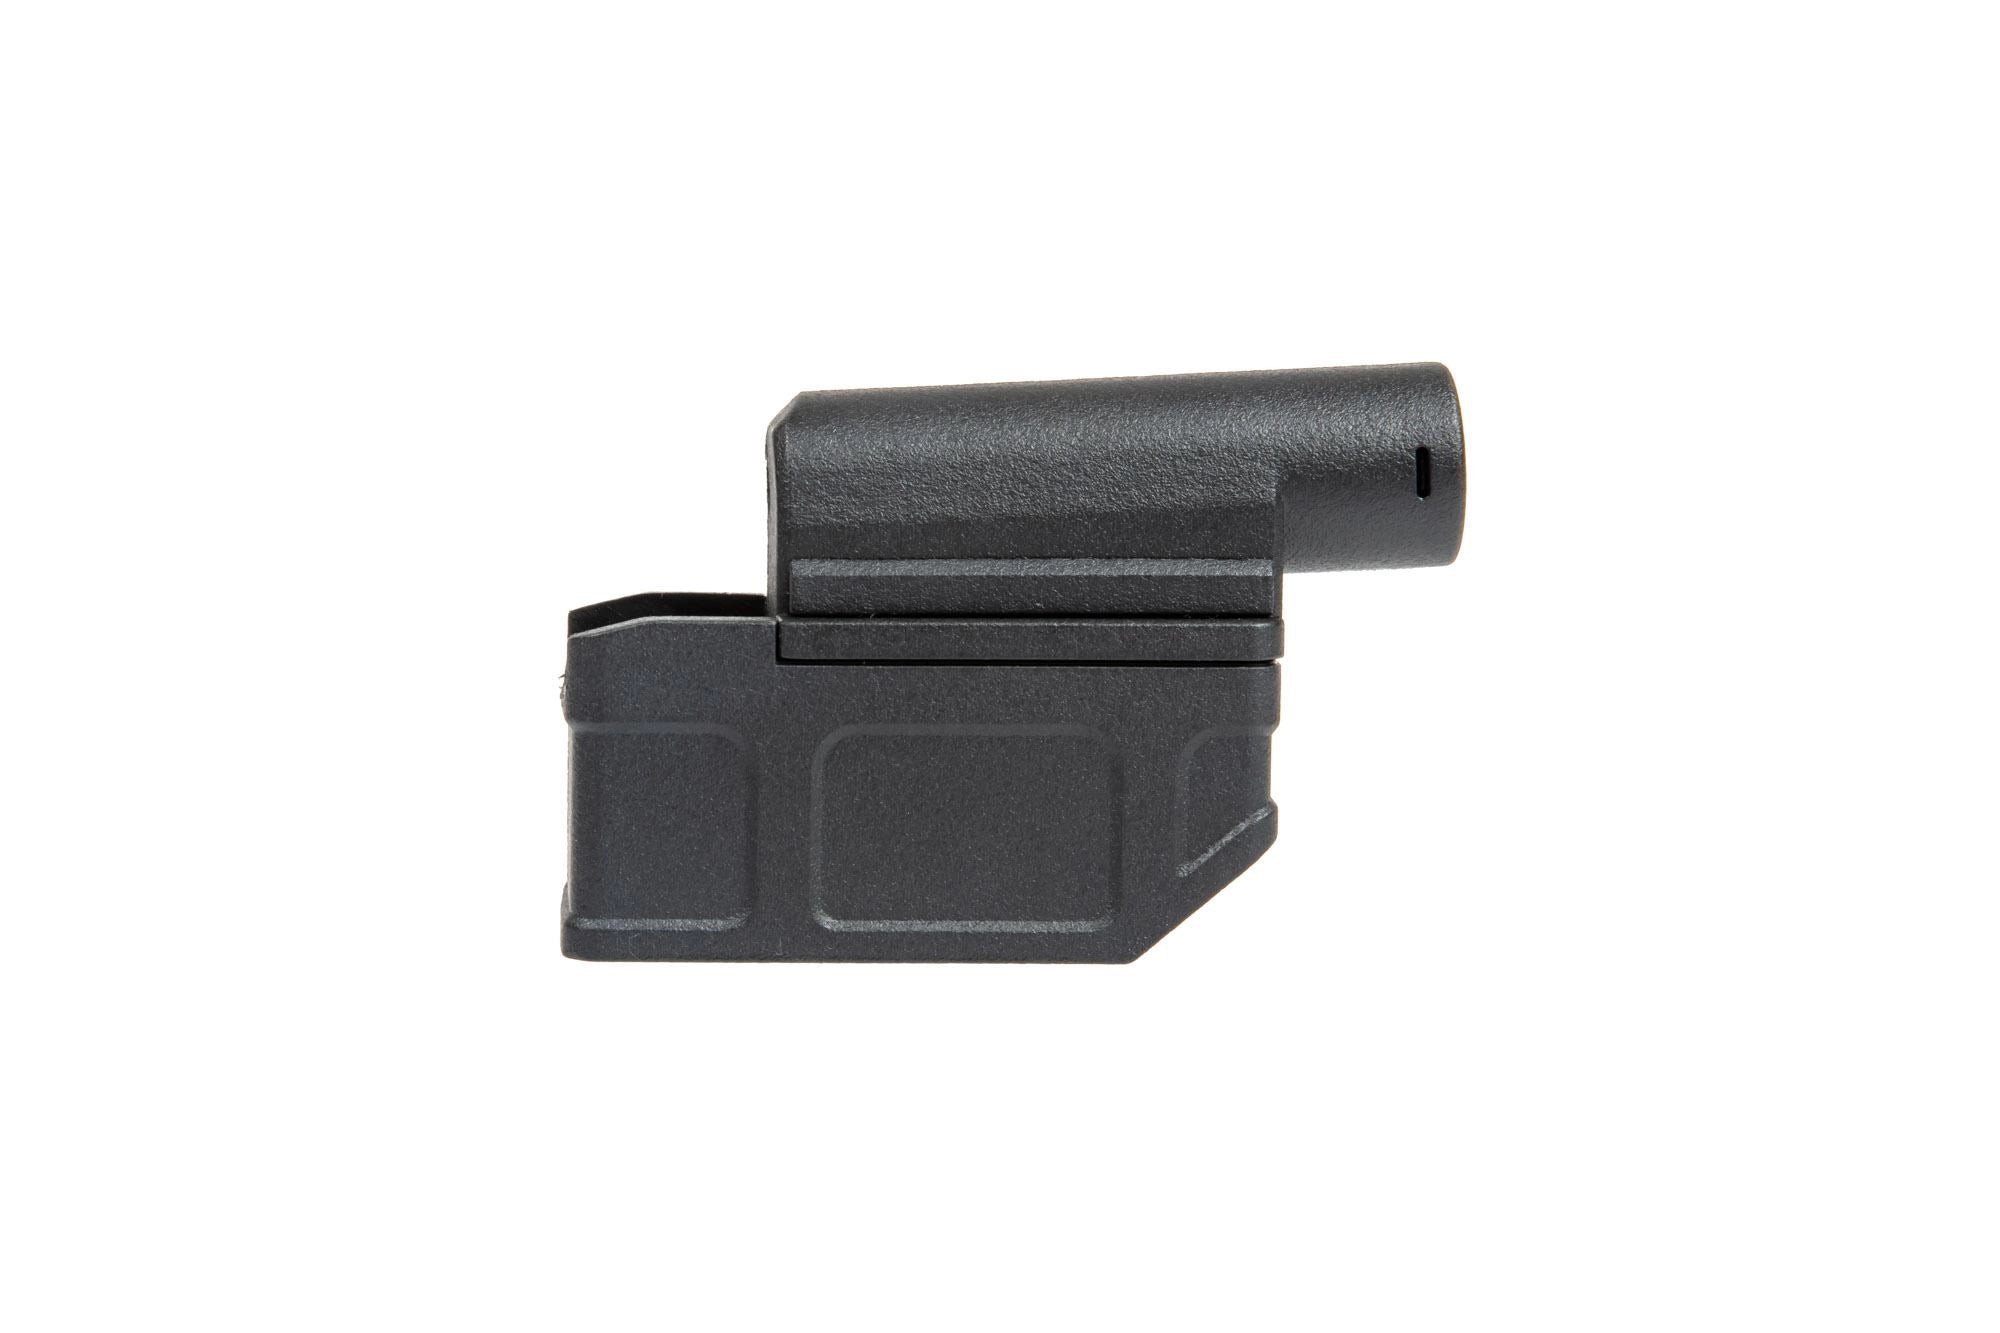 Adaptateur Chargeur M4 pour Fusil - Noir